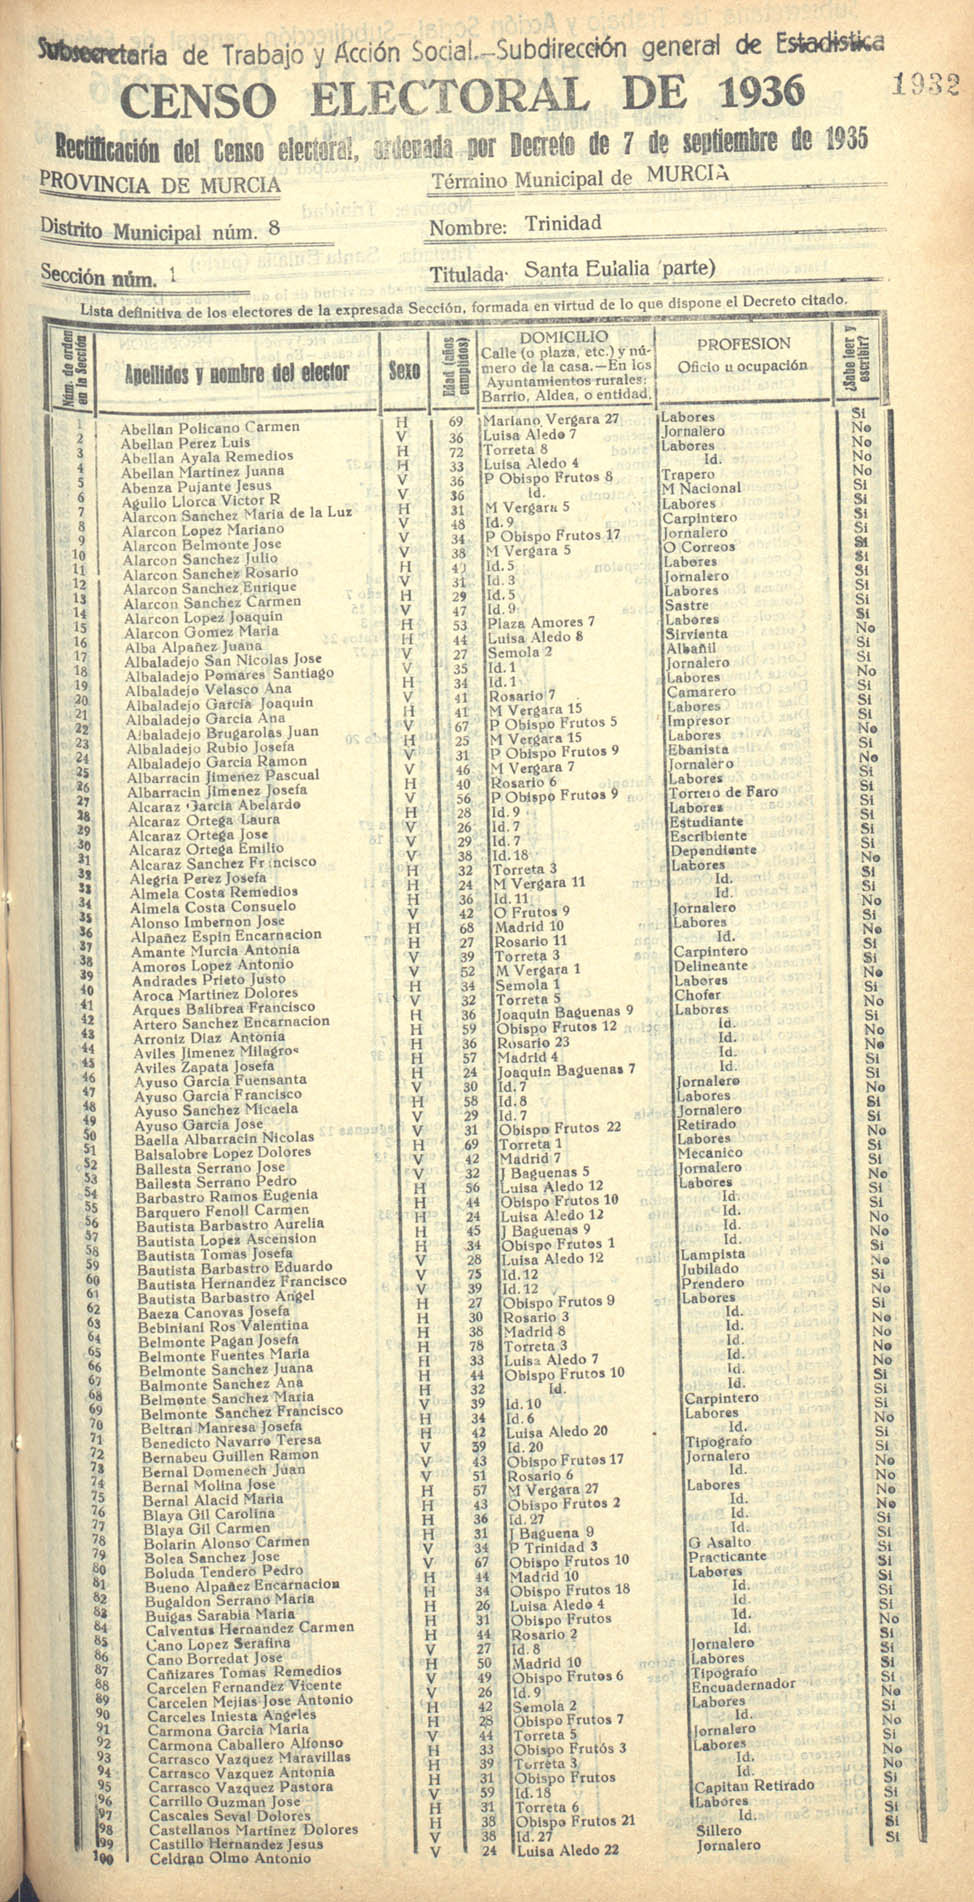 Censo electoral provincial de 1936. Murcia. Distrito 8º, Trinidad. Sección 1ª, Santa Eulalia (parte)